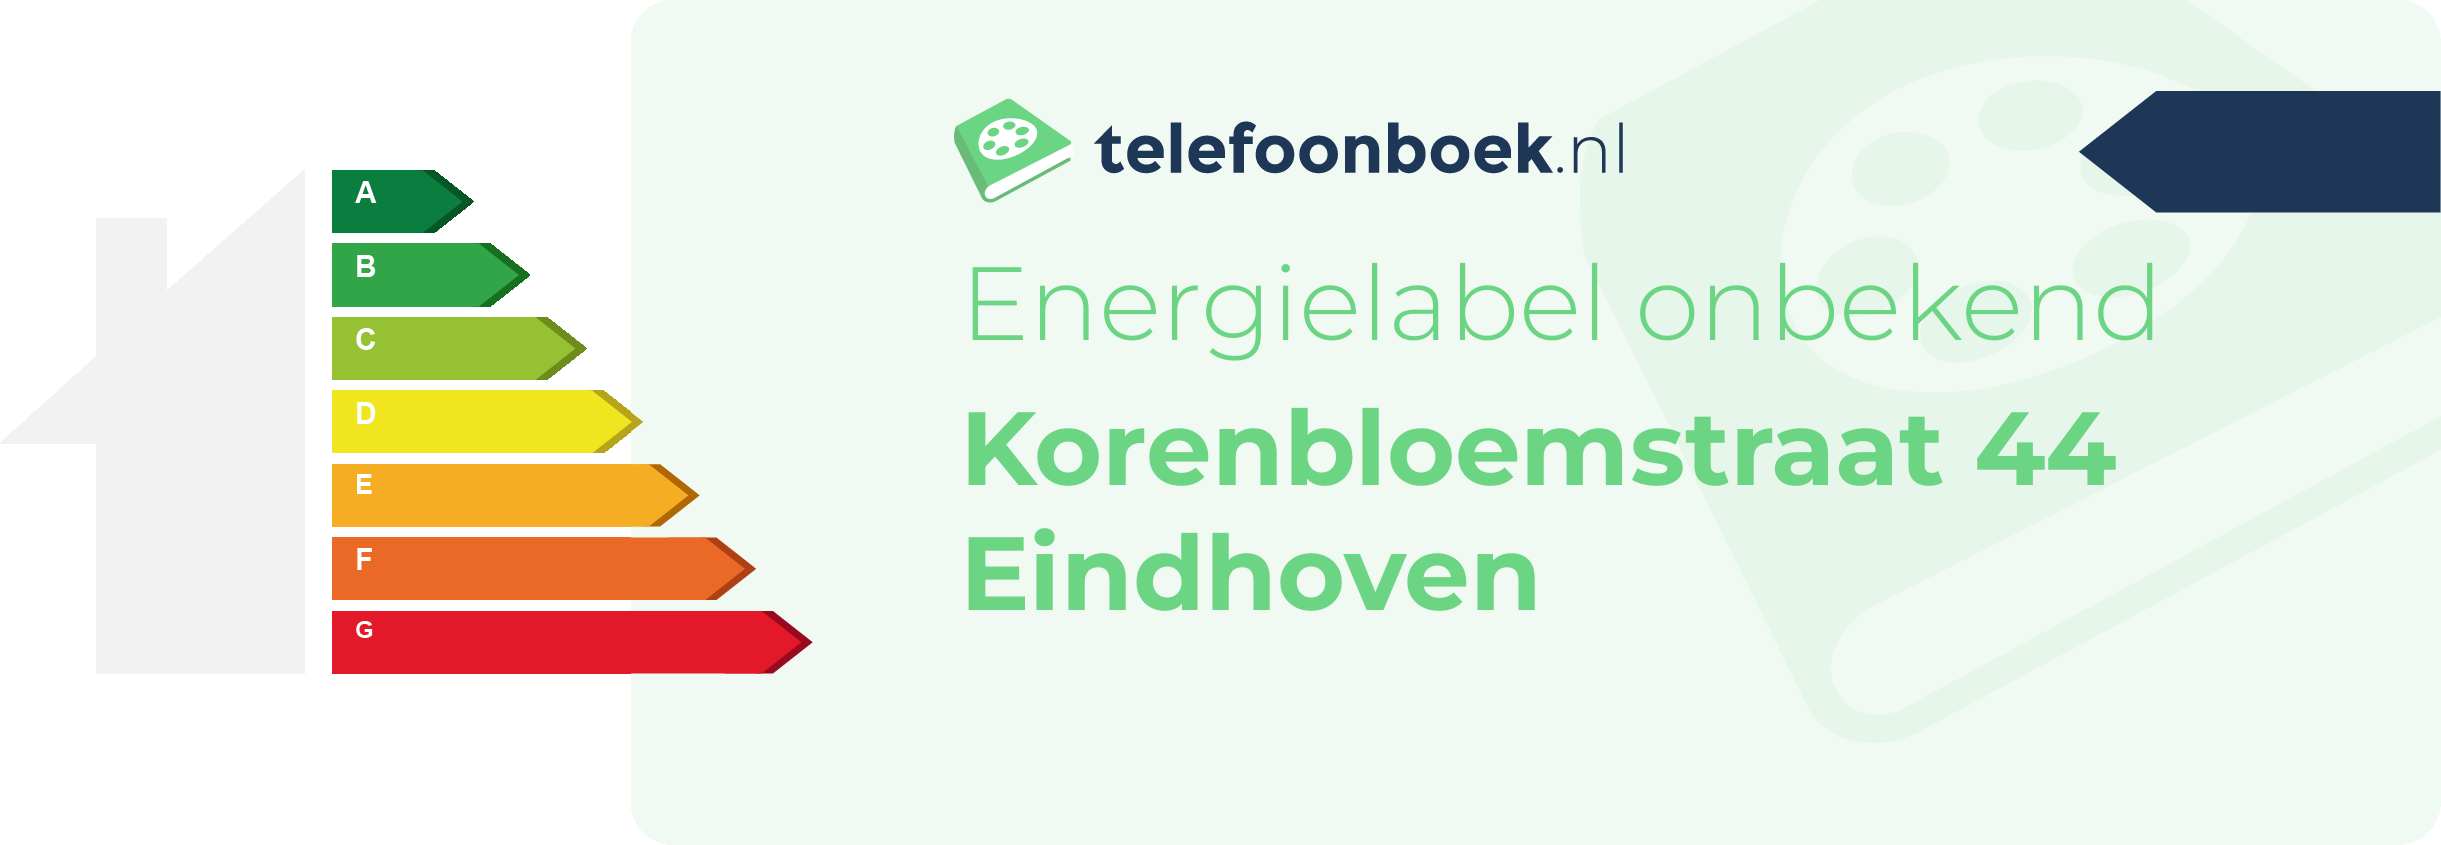 Energielabel Korenbloemstraat 44 Eindhoven